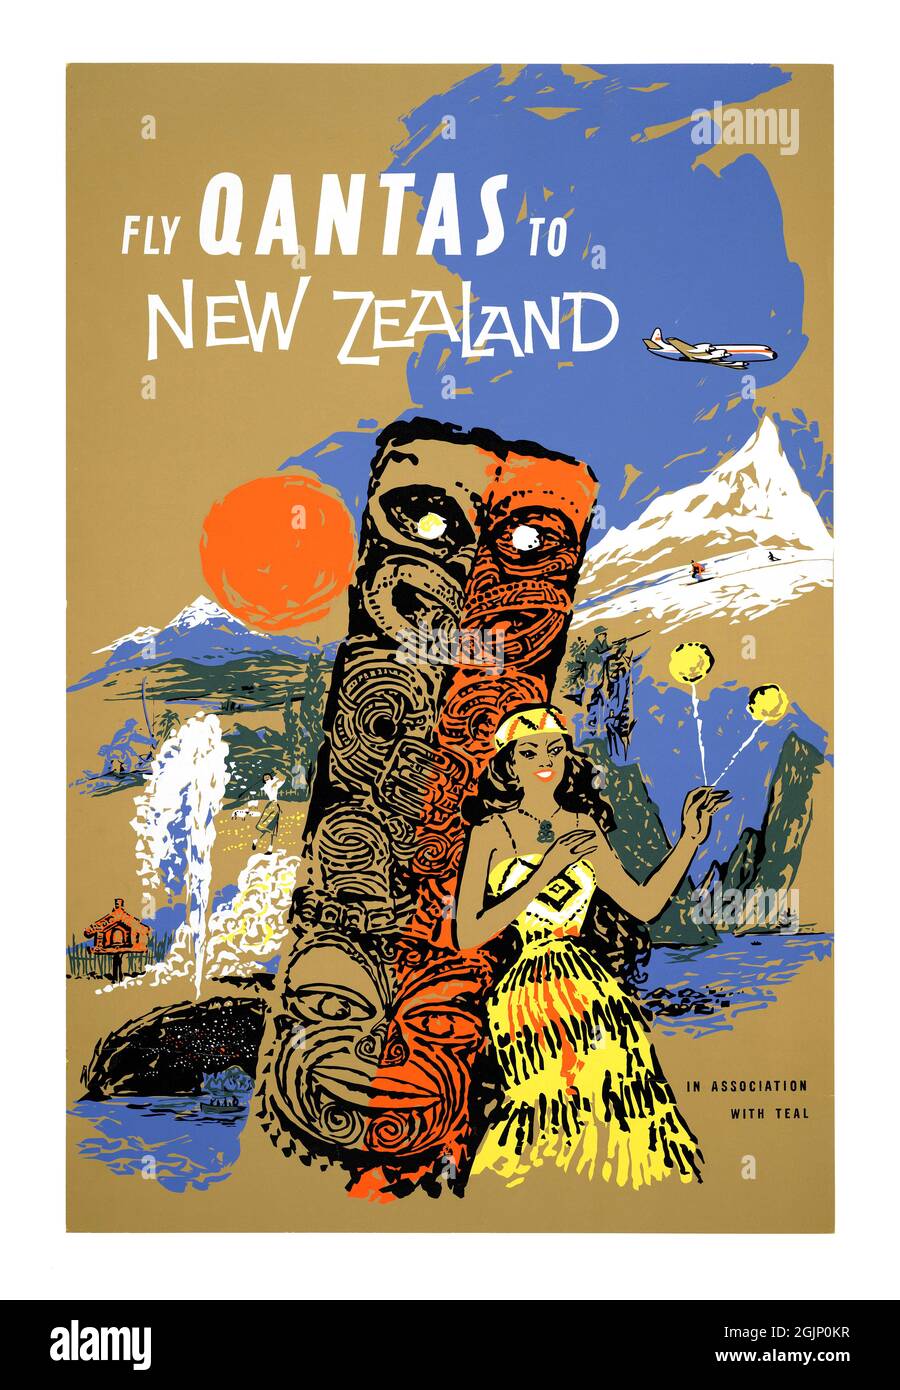 Vola Qantas in Nuova Zelanda, in collaborazione con TEAL. Artista sconosciuto. Poster d'epoca restaurato pubblicato negli anni '50 in Nuova Zelanda. Foto Stock